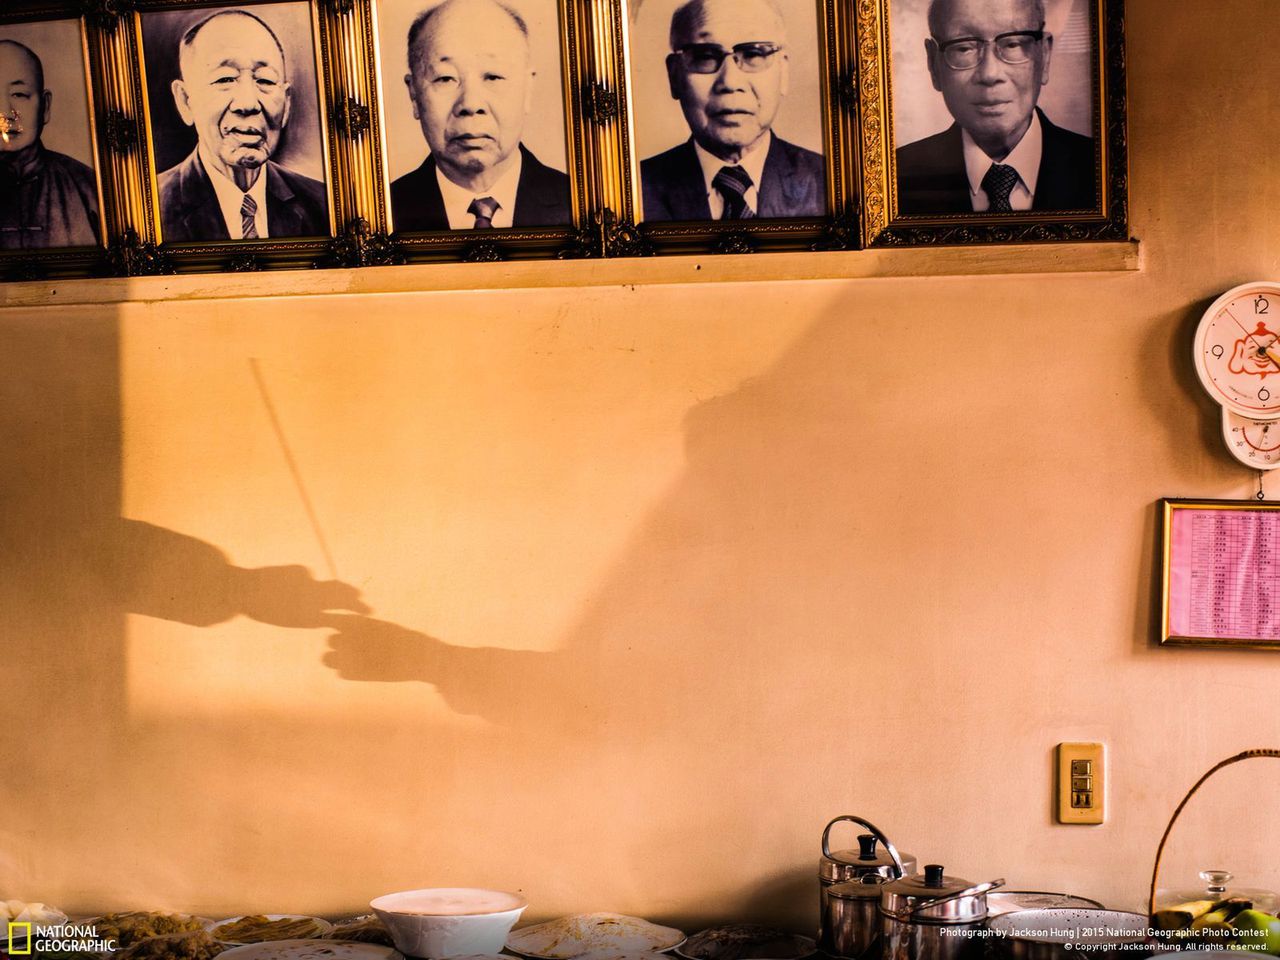 Następnym wyróżnionym zdjęciem jest „From Generation to Generation” zrobione przez Jacksona Hunga na Tajwanie. Fotografia została zrobiona podczas obchodów Chińskiego Nowego Roku. Twórca podczas obrzędów związanych ze wspominaniem przodków zwrócił uwagę na interesujący układ światła i dłonie podające sobie kadzidło w trakcie modlitwy.